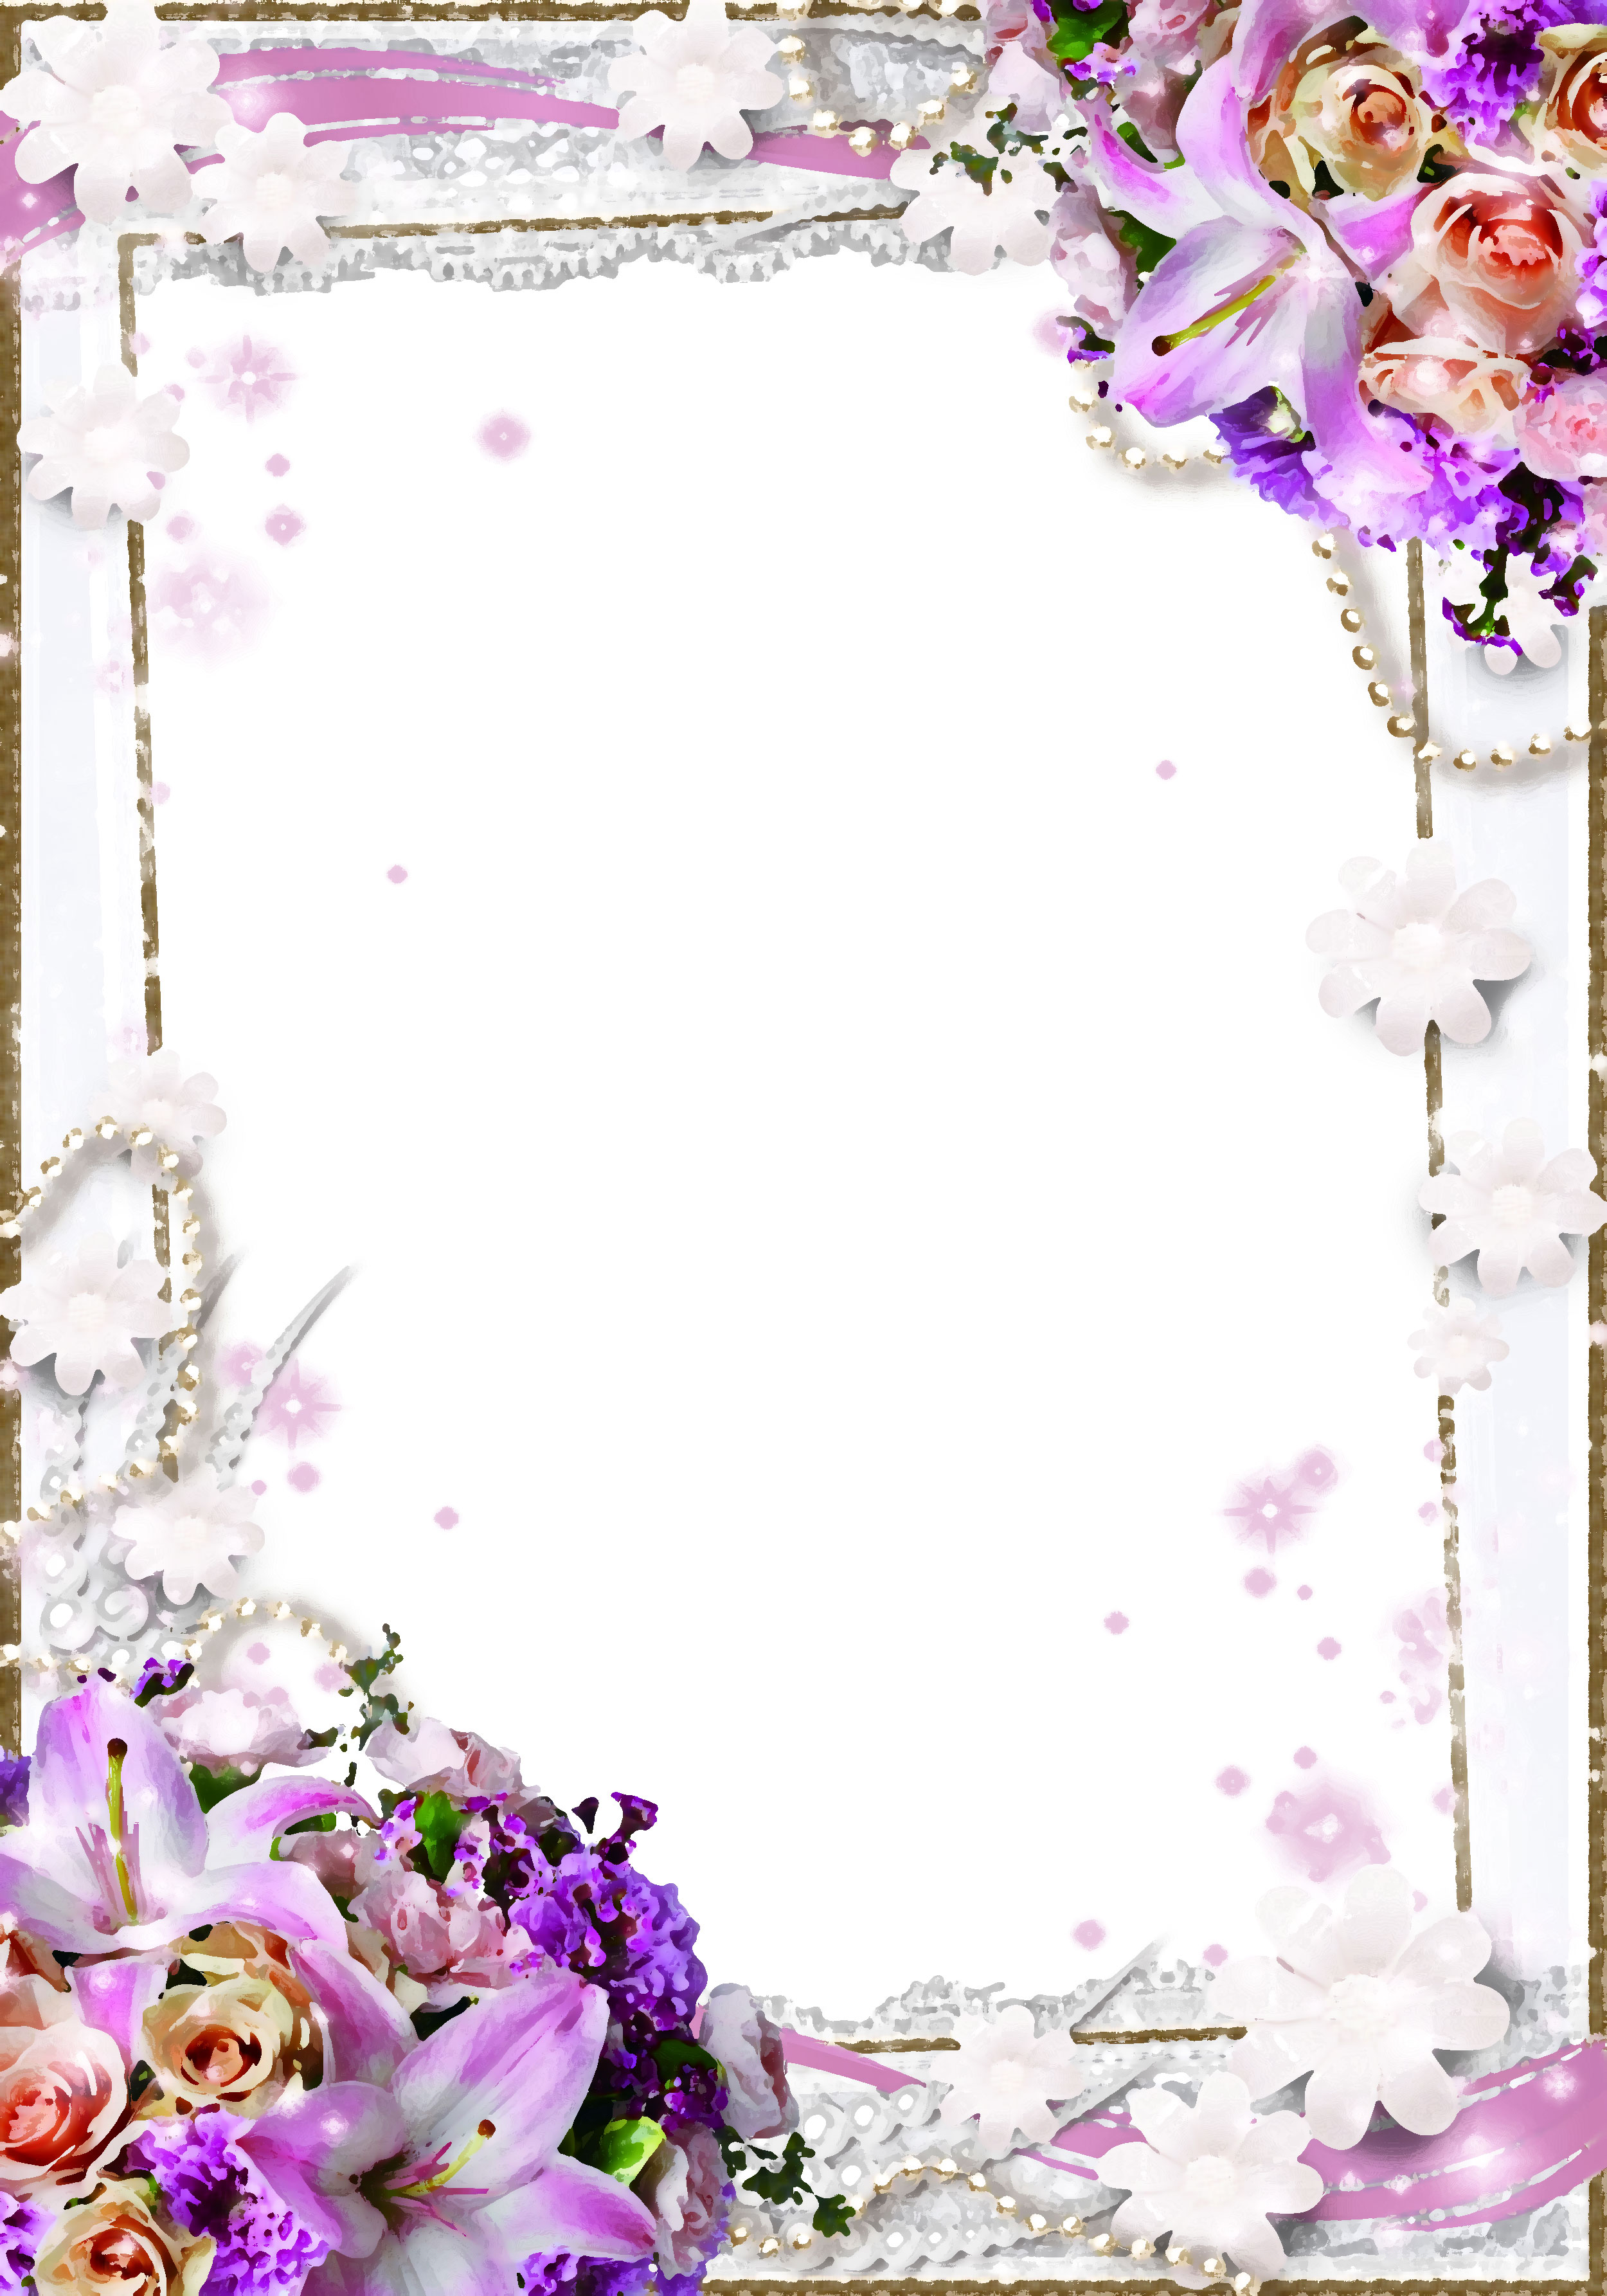 紫色の花のイラスト フリー素材 背景 壁紙no 433 紫のユリ 白バラ 真珠